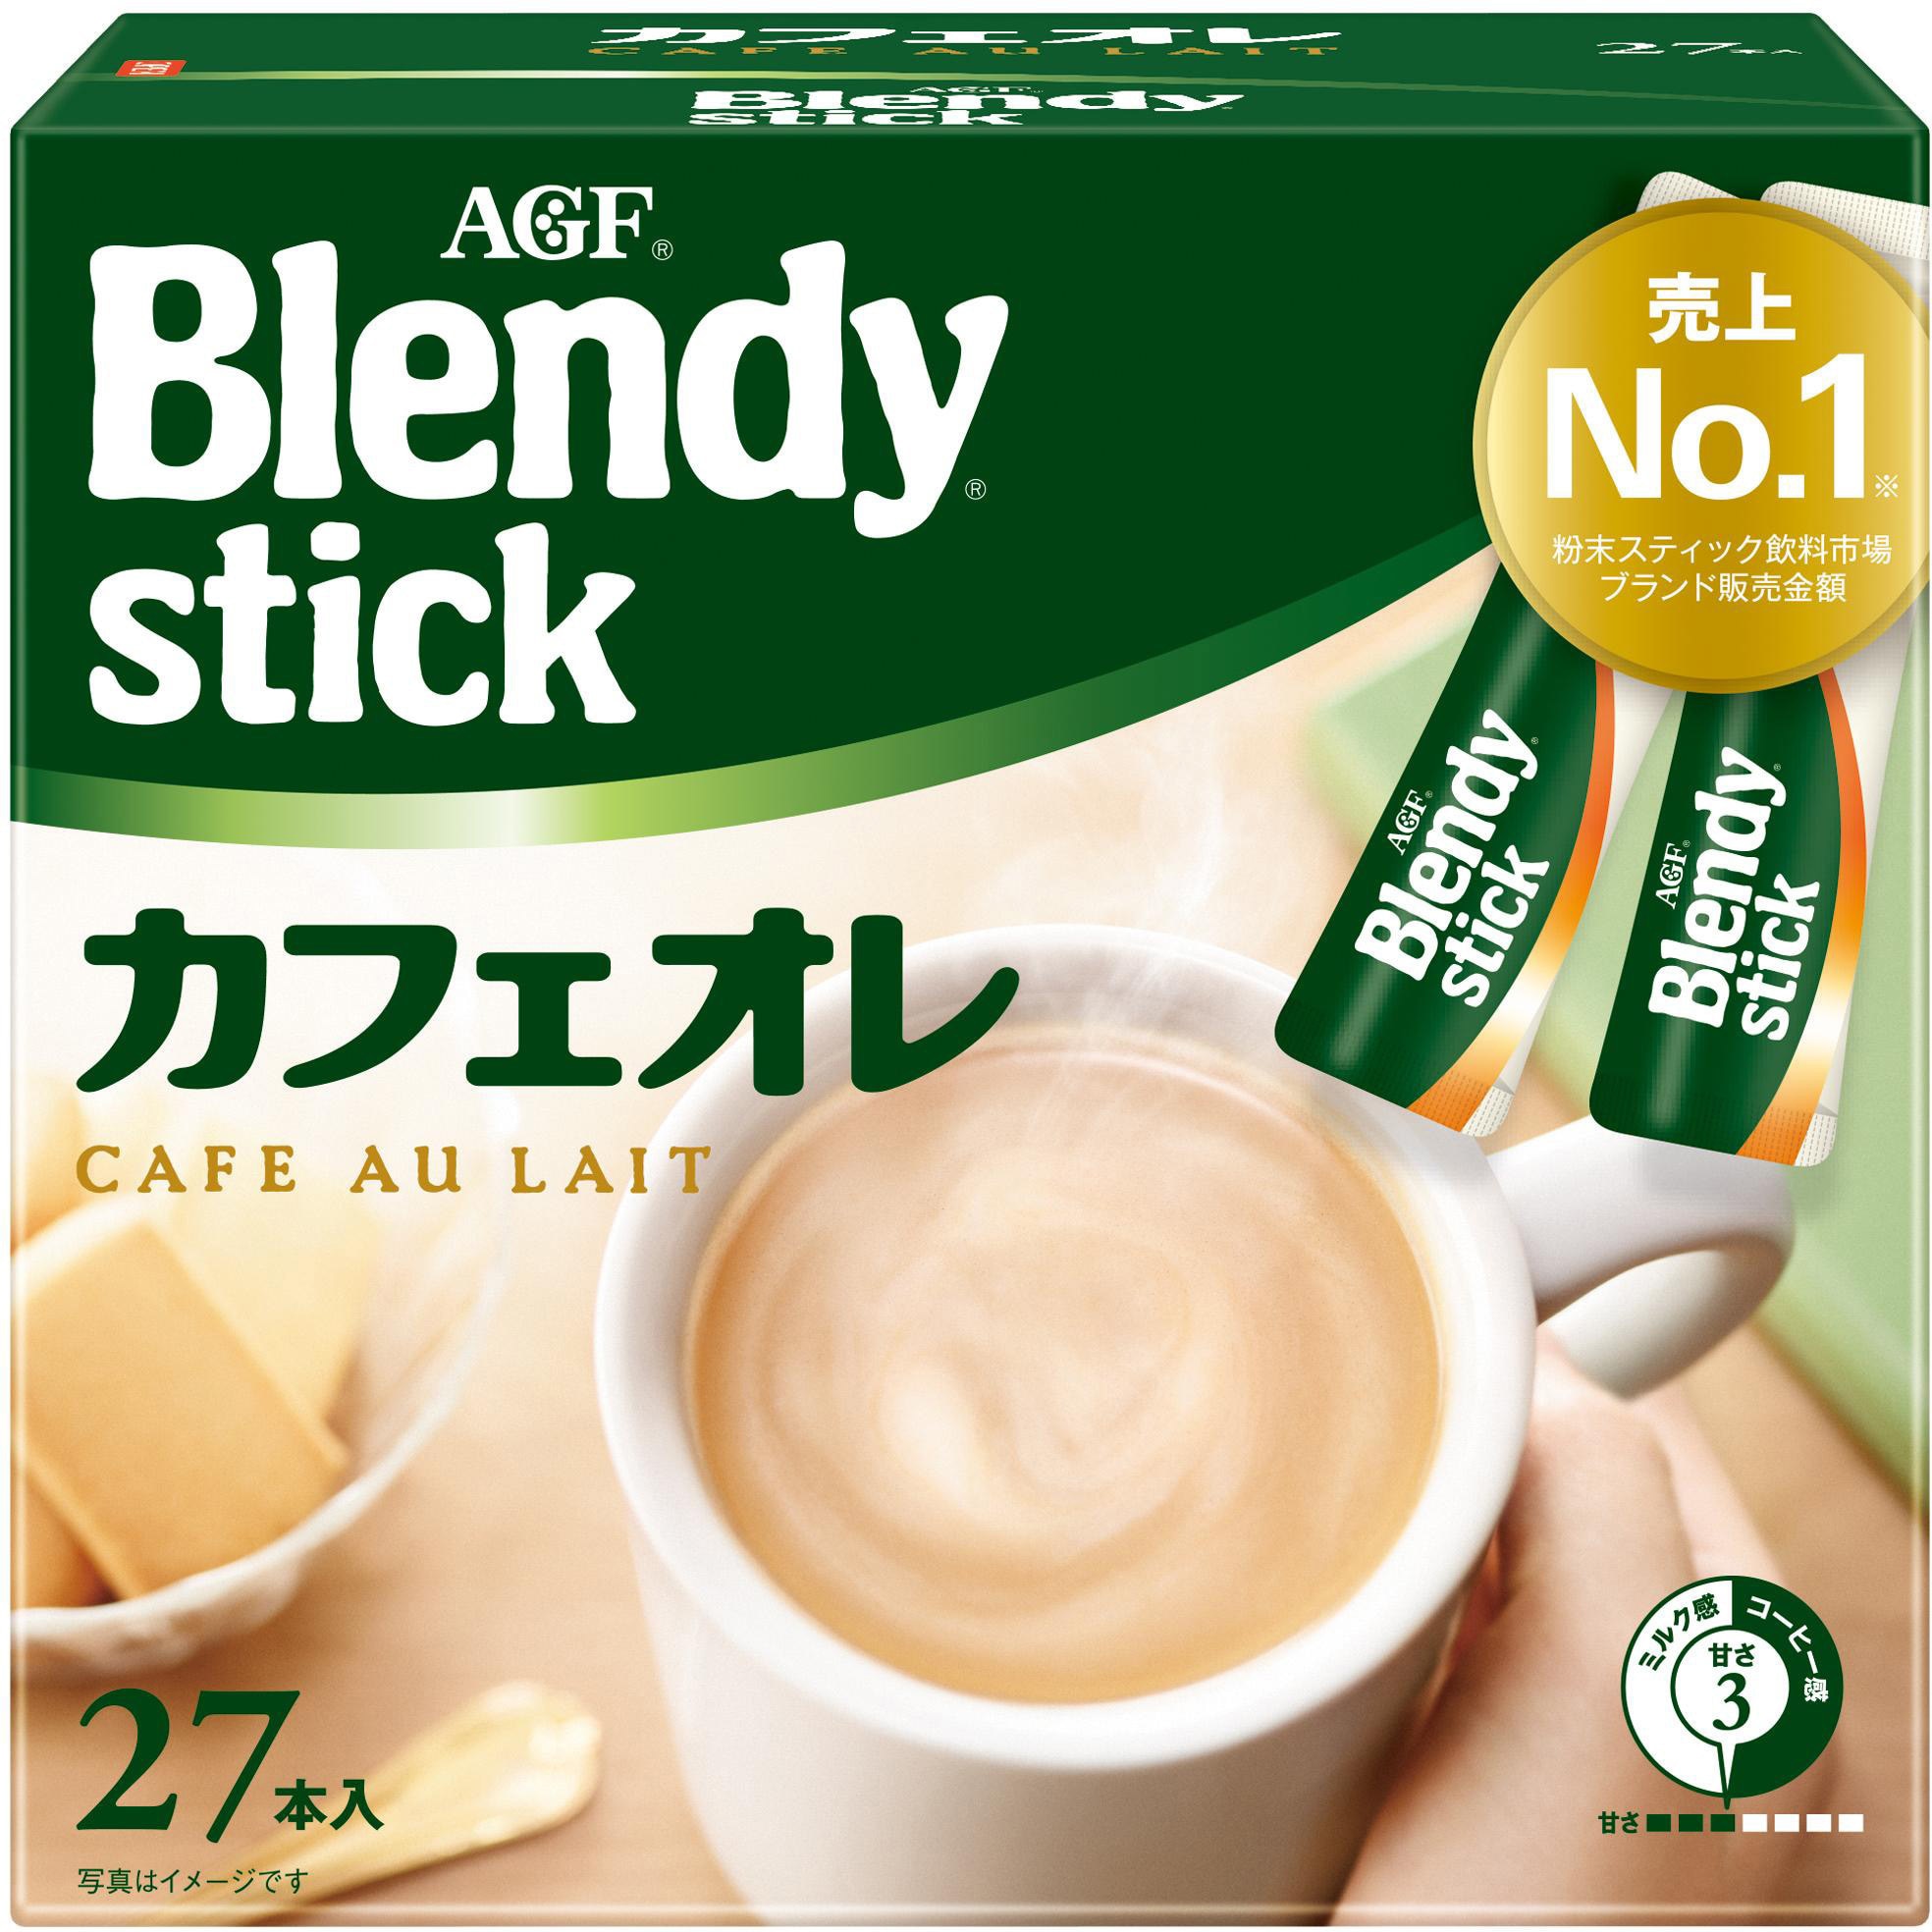 Blendy stick ミニチュアチャーム カフェオレ - その他